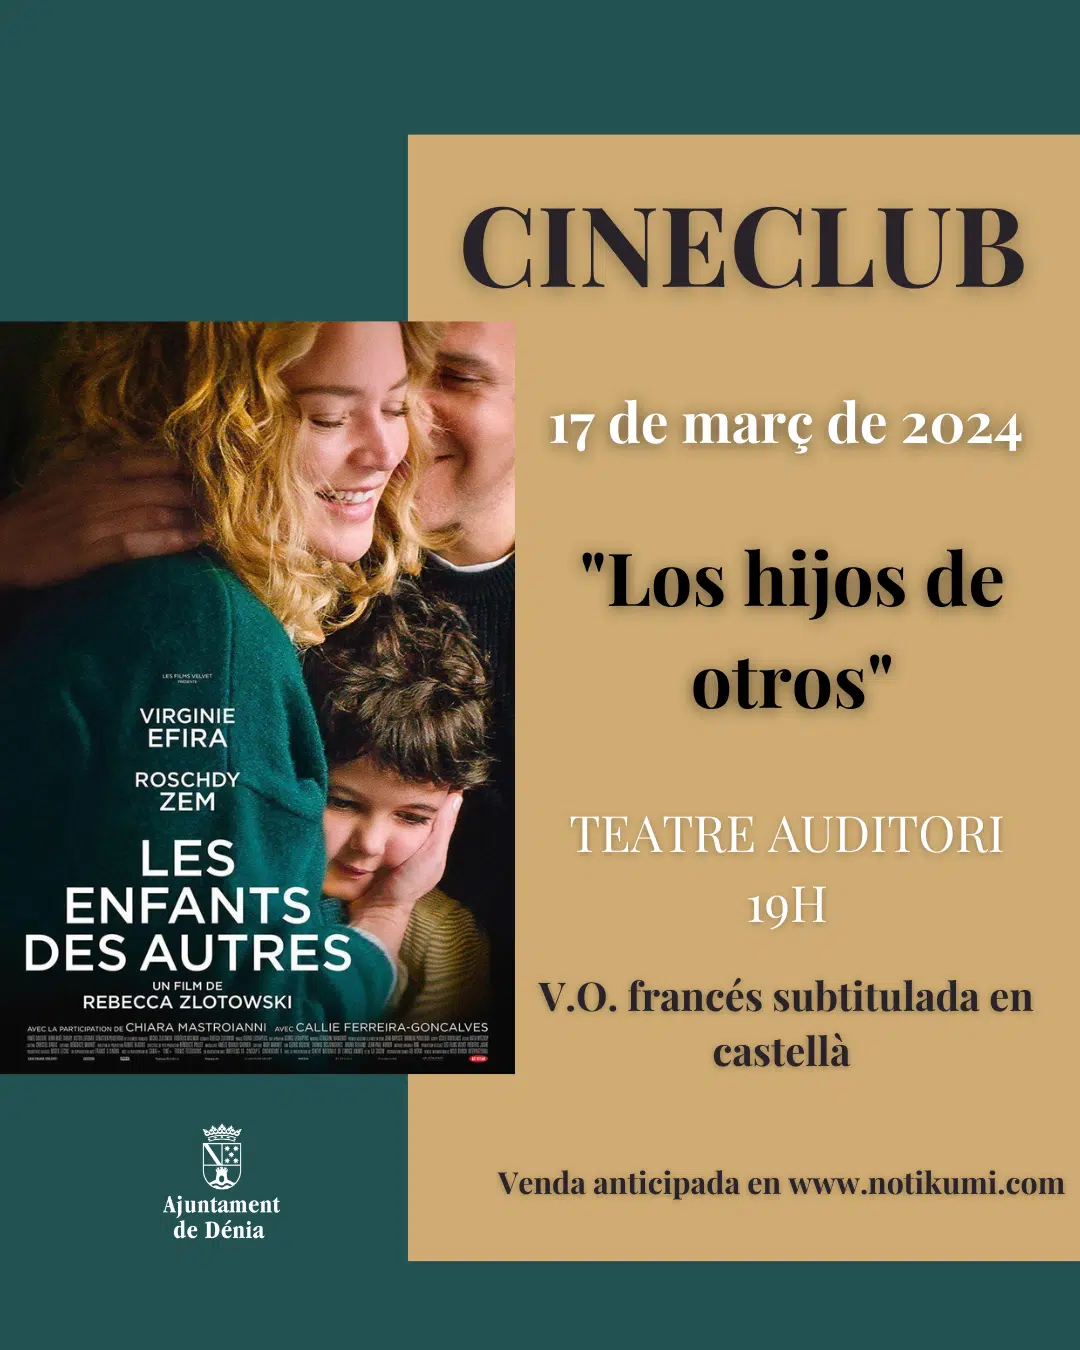 Cineclub: Los hijos de otros